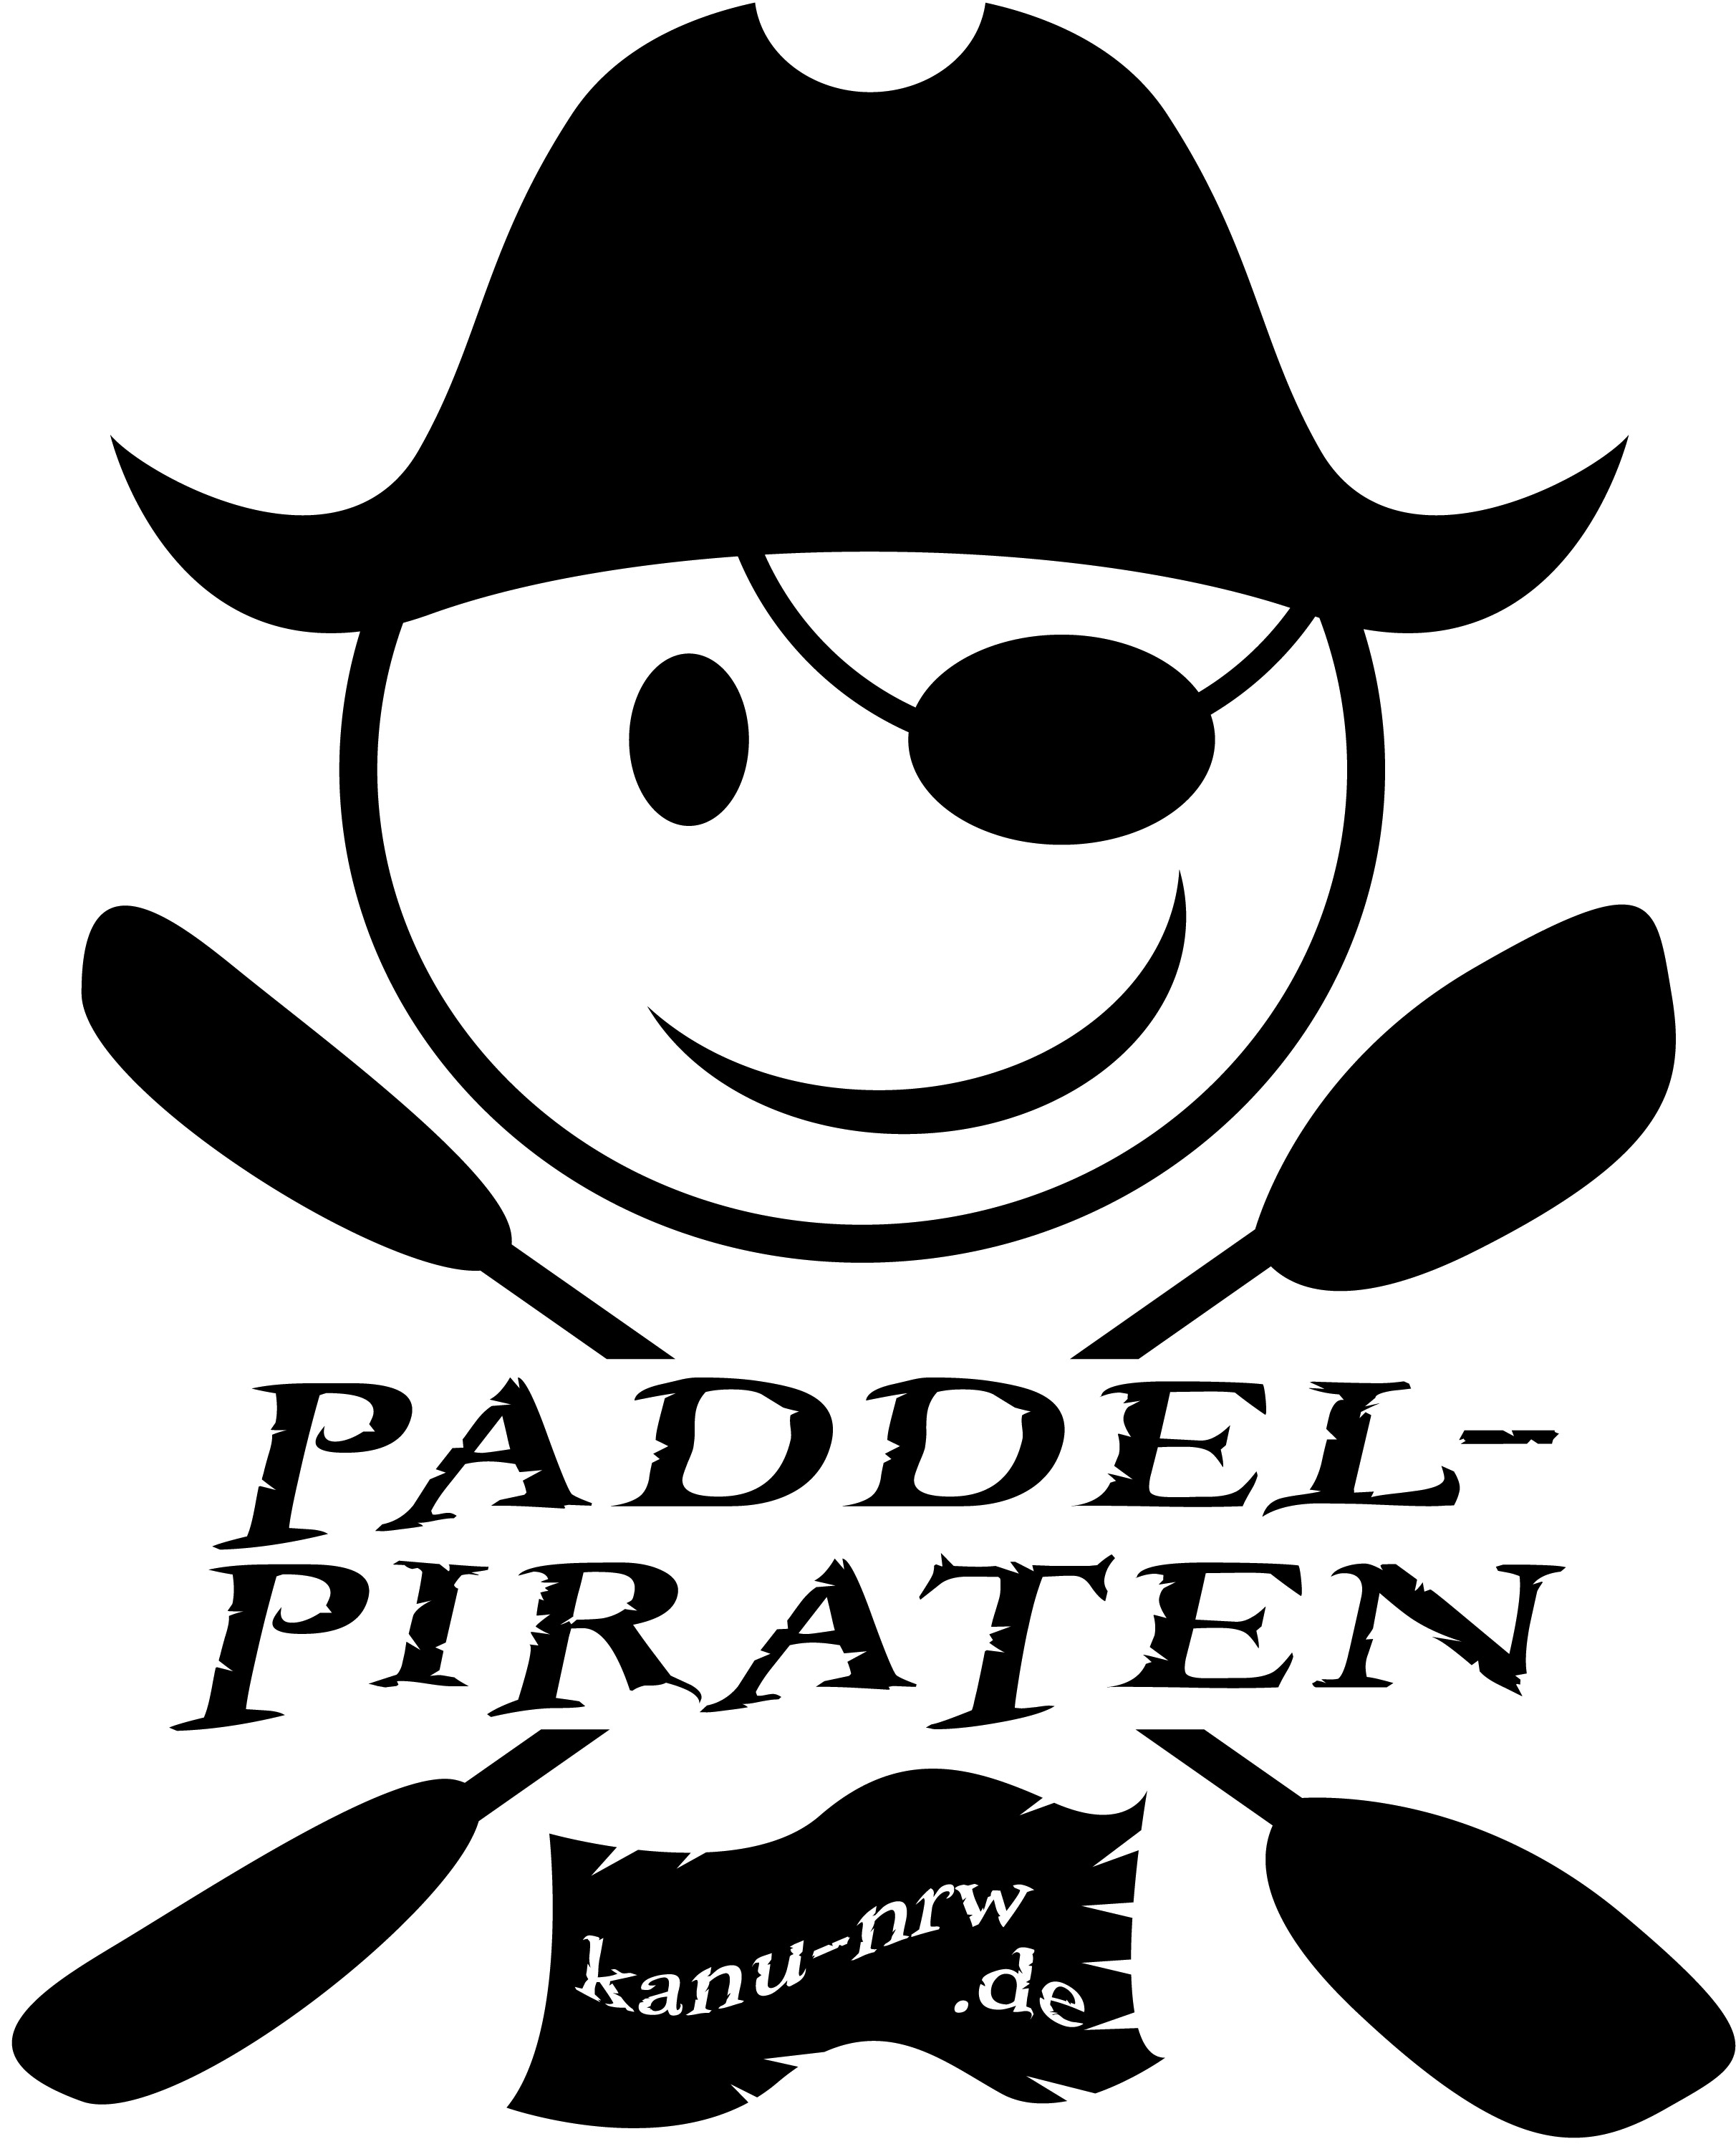 paddel piraten logo final 01